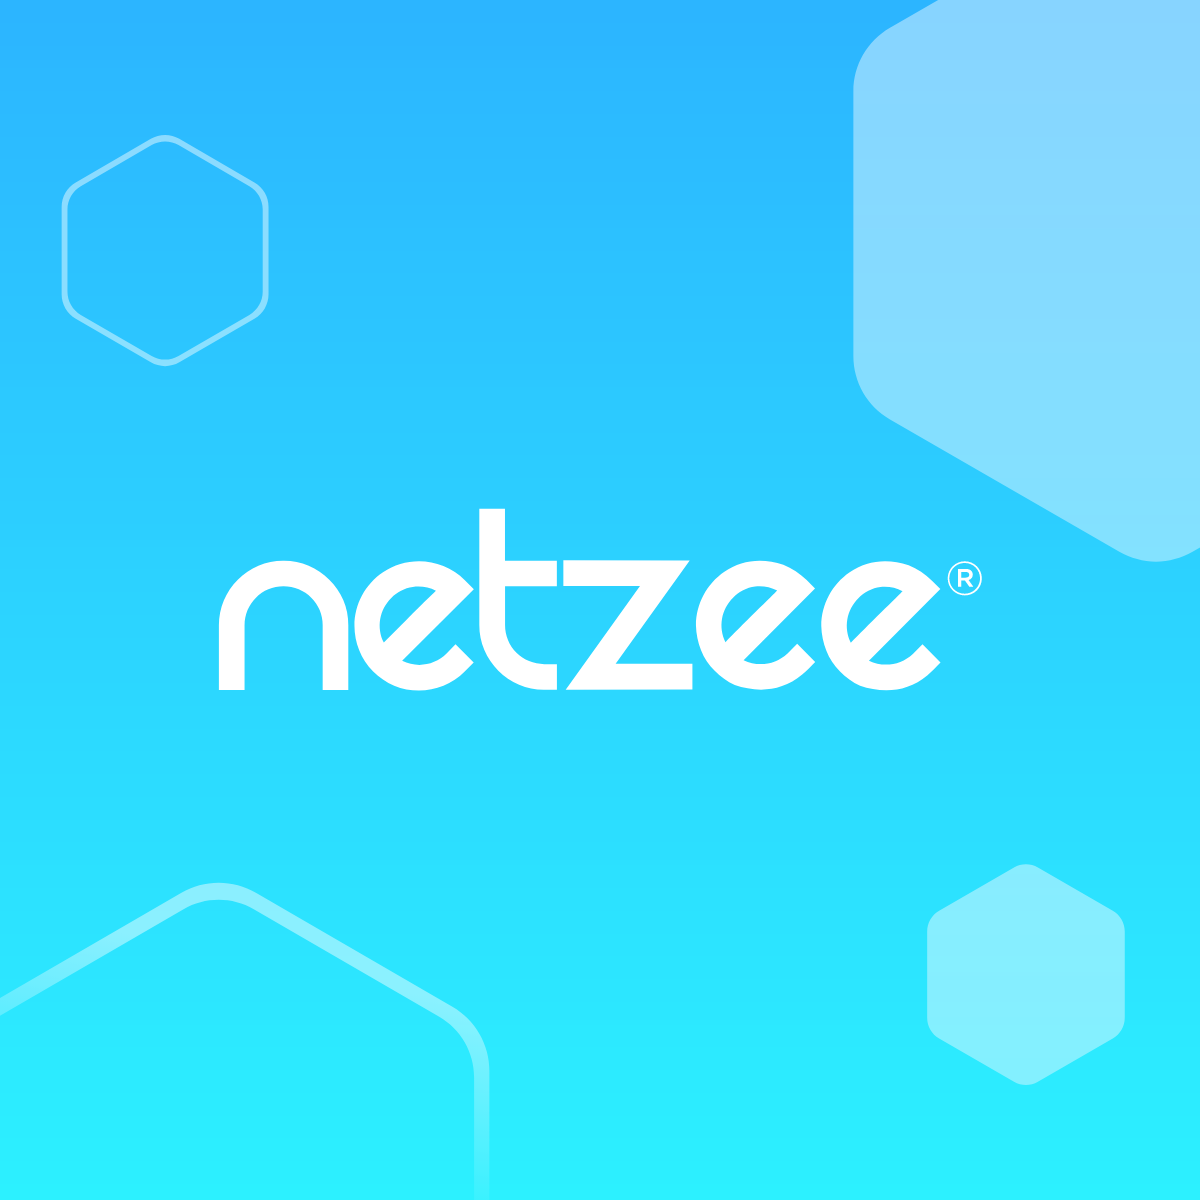 (c) Netzee.com.br